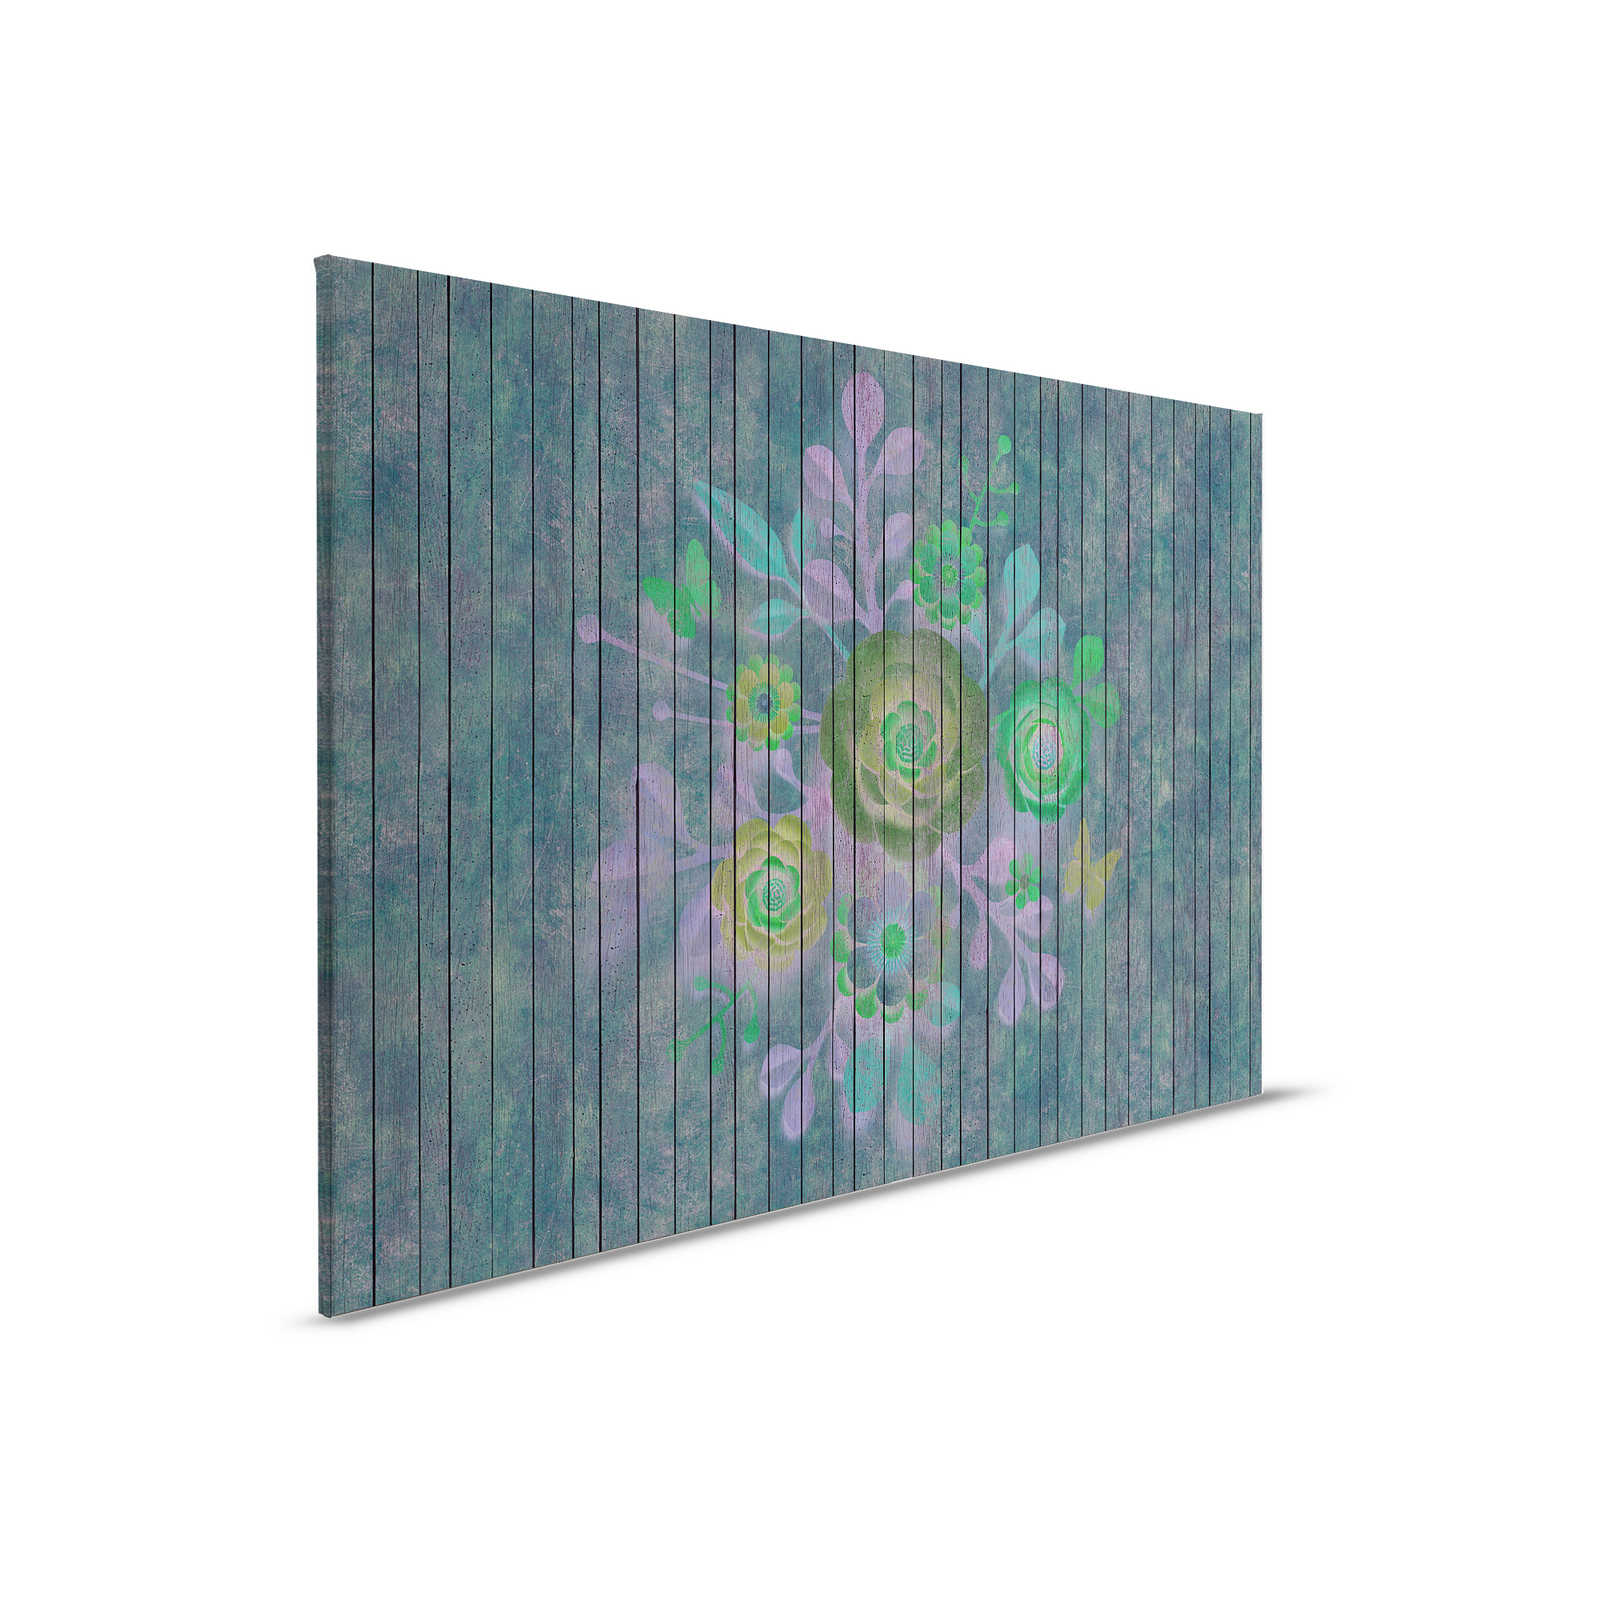 Sproeiboeket 2 - Canvas schilderij in houtpaneel structuur met bloemen op board muur - 0.90 m x 0.60 m
